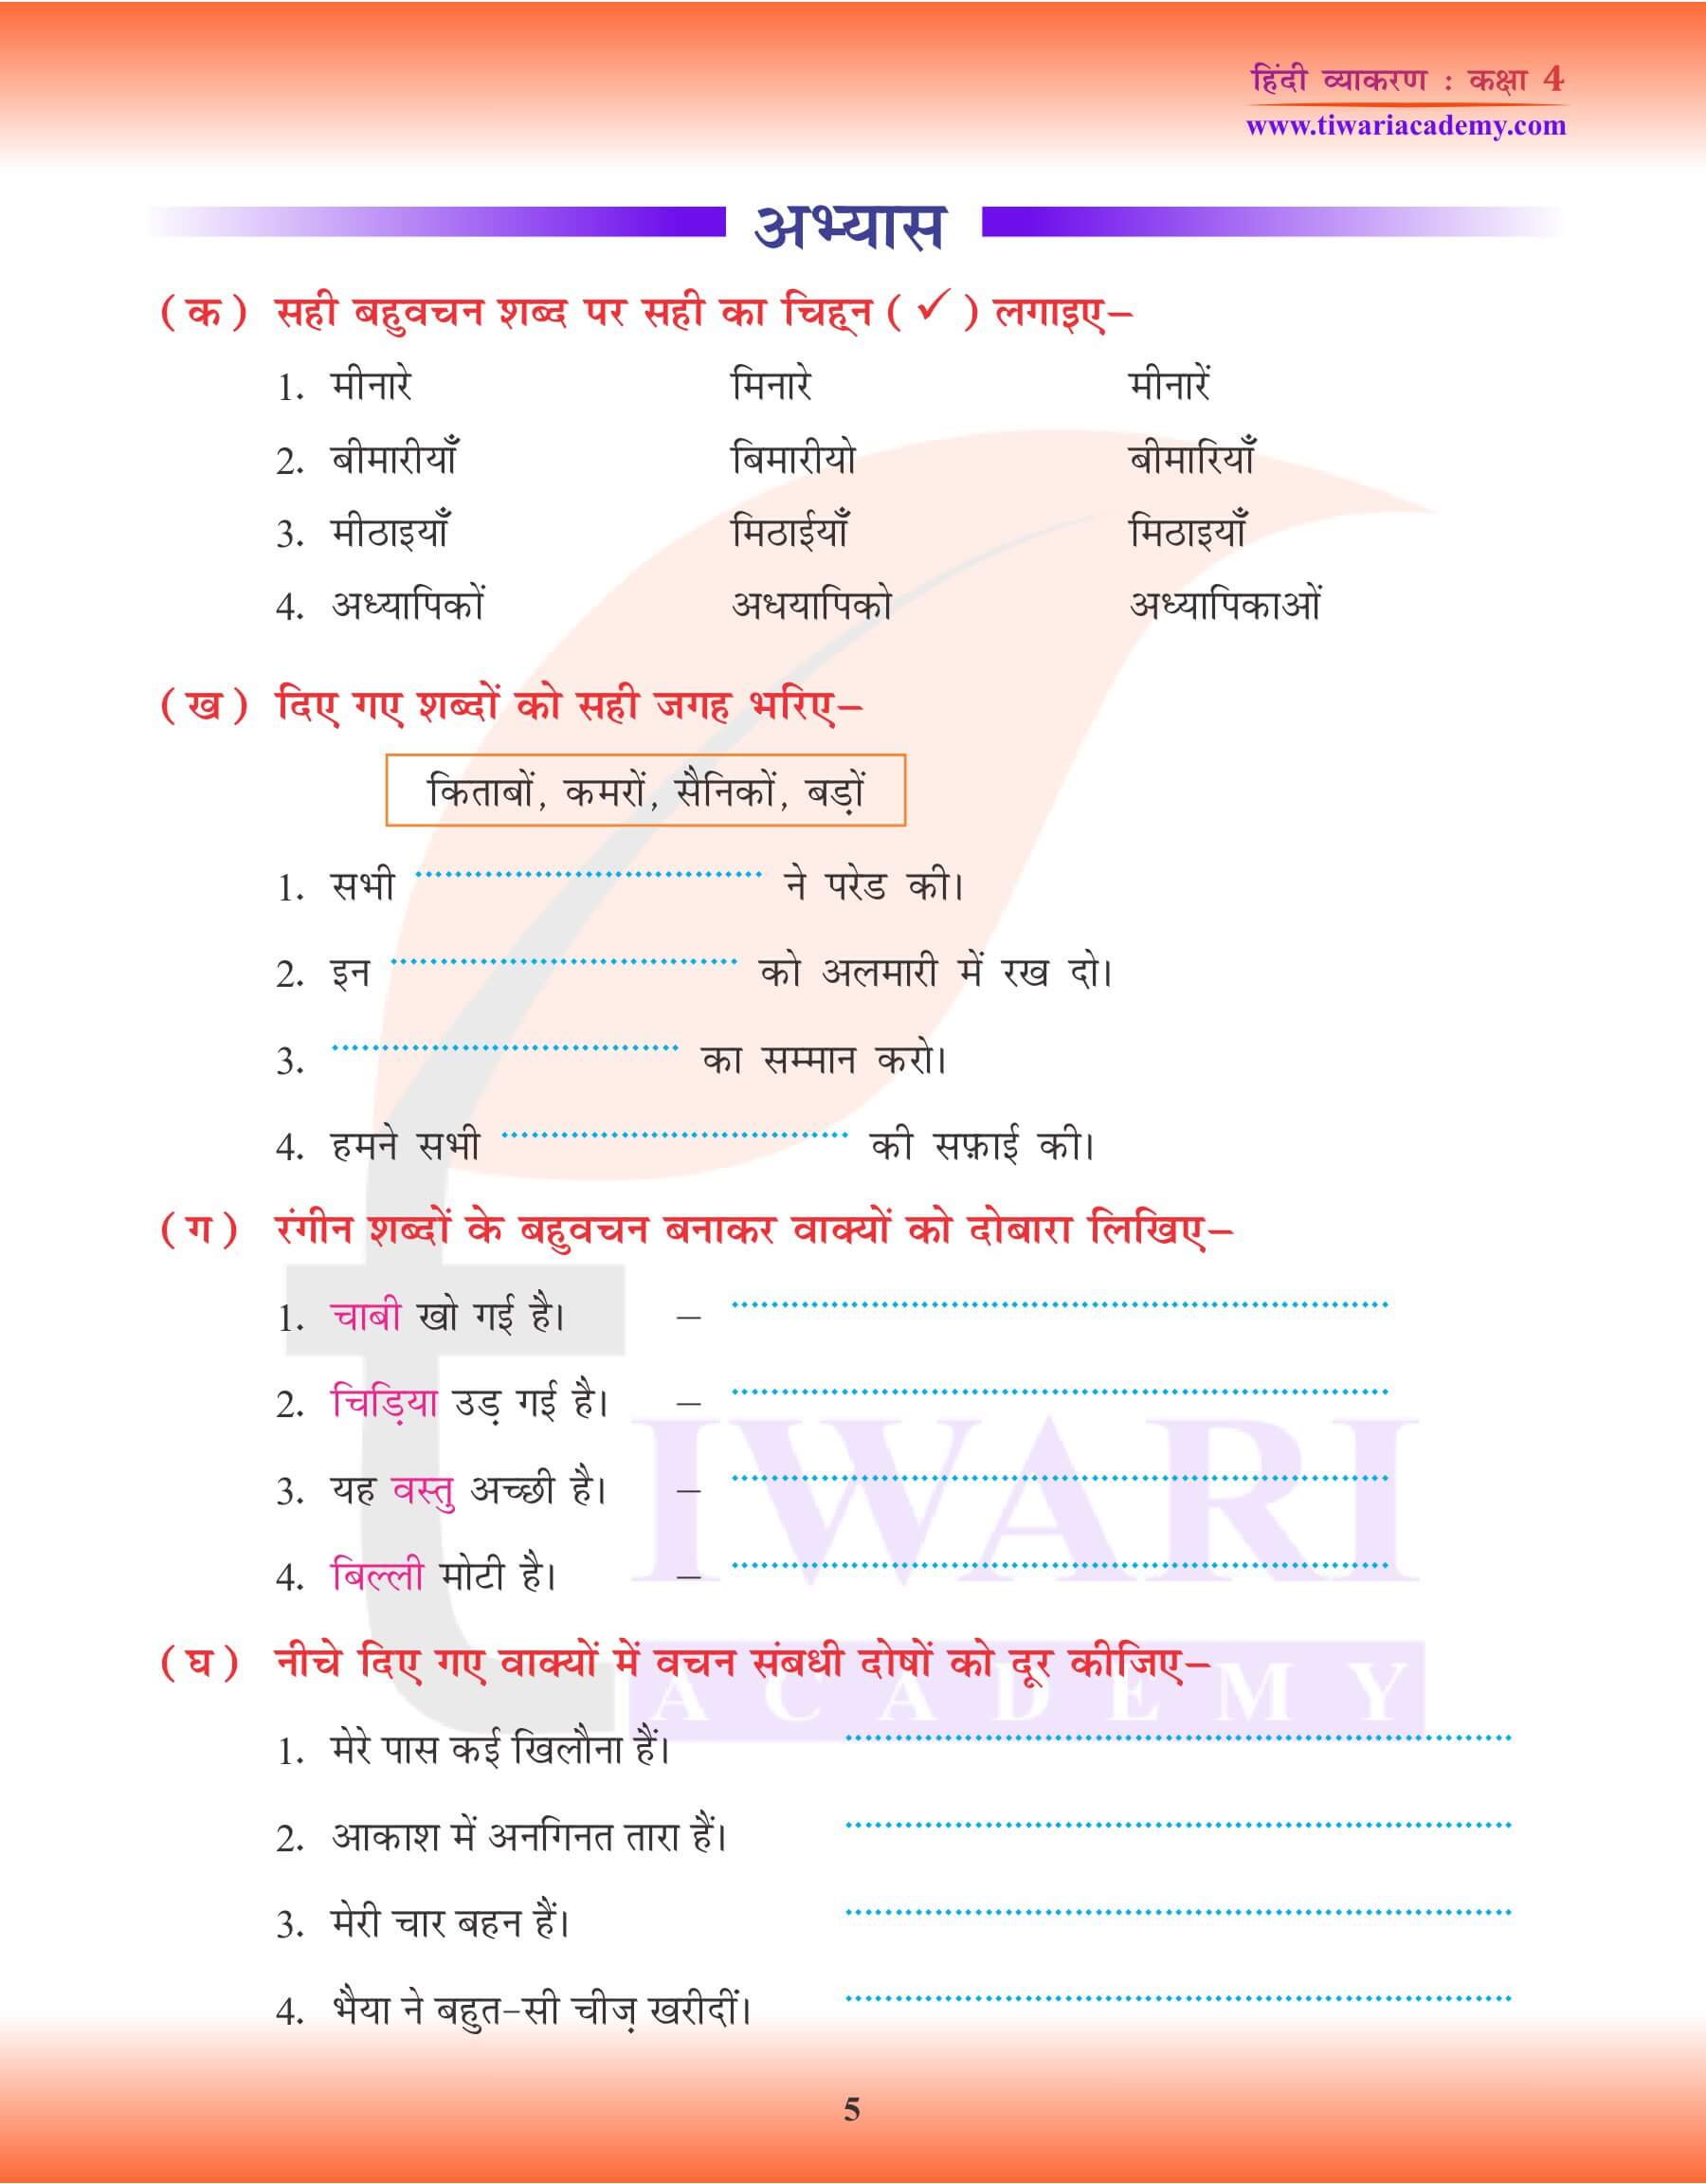 कक्षा 4 हिंदी व्याकरण में एकवचन के उदाहरण